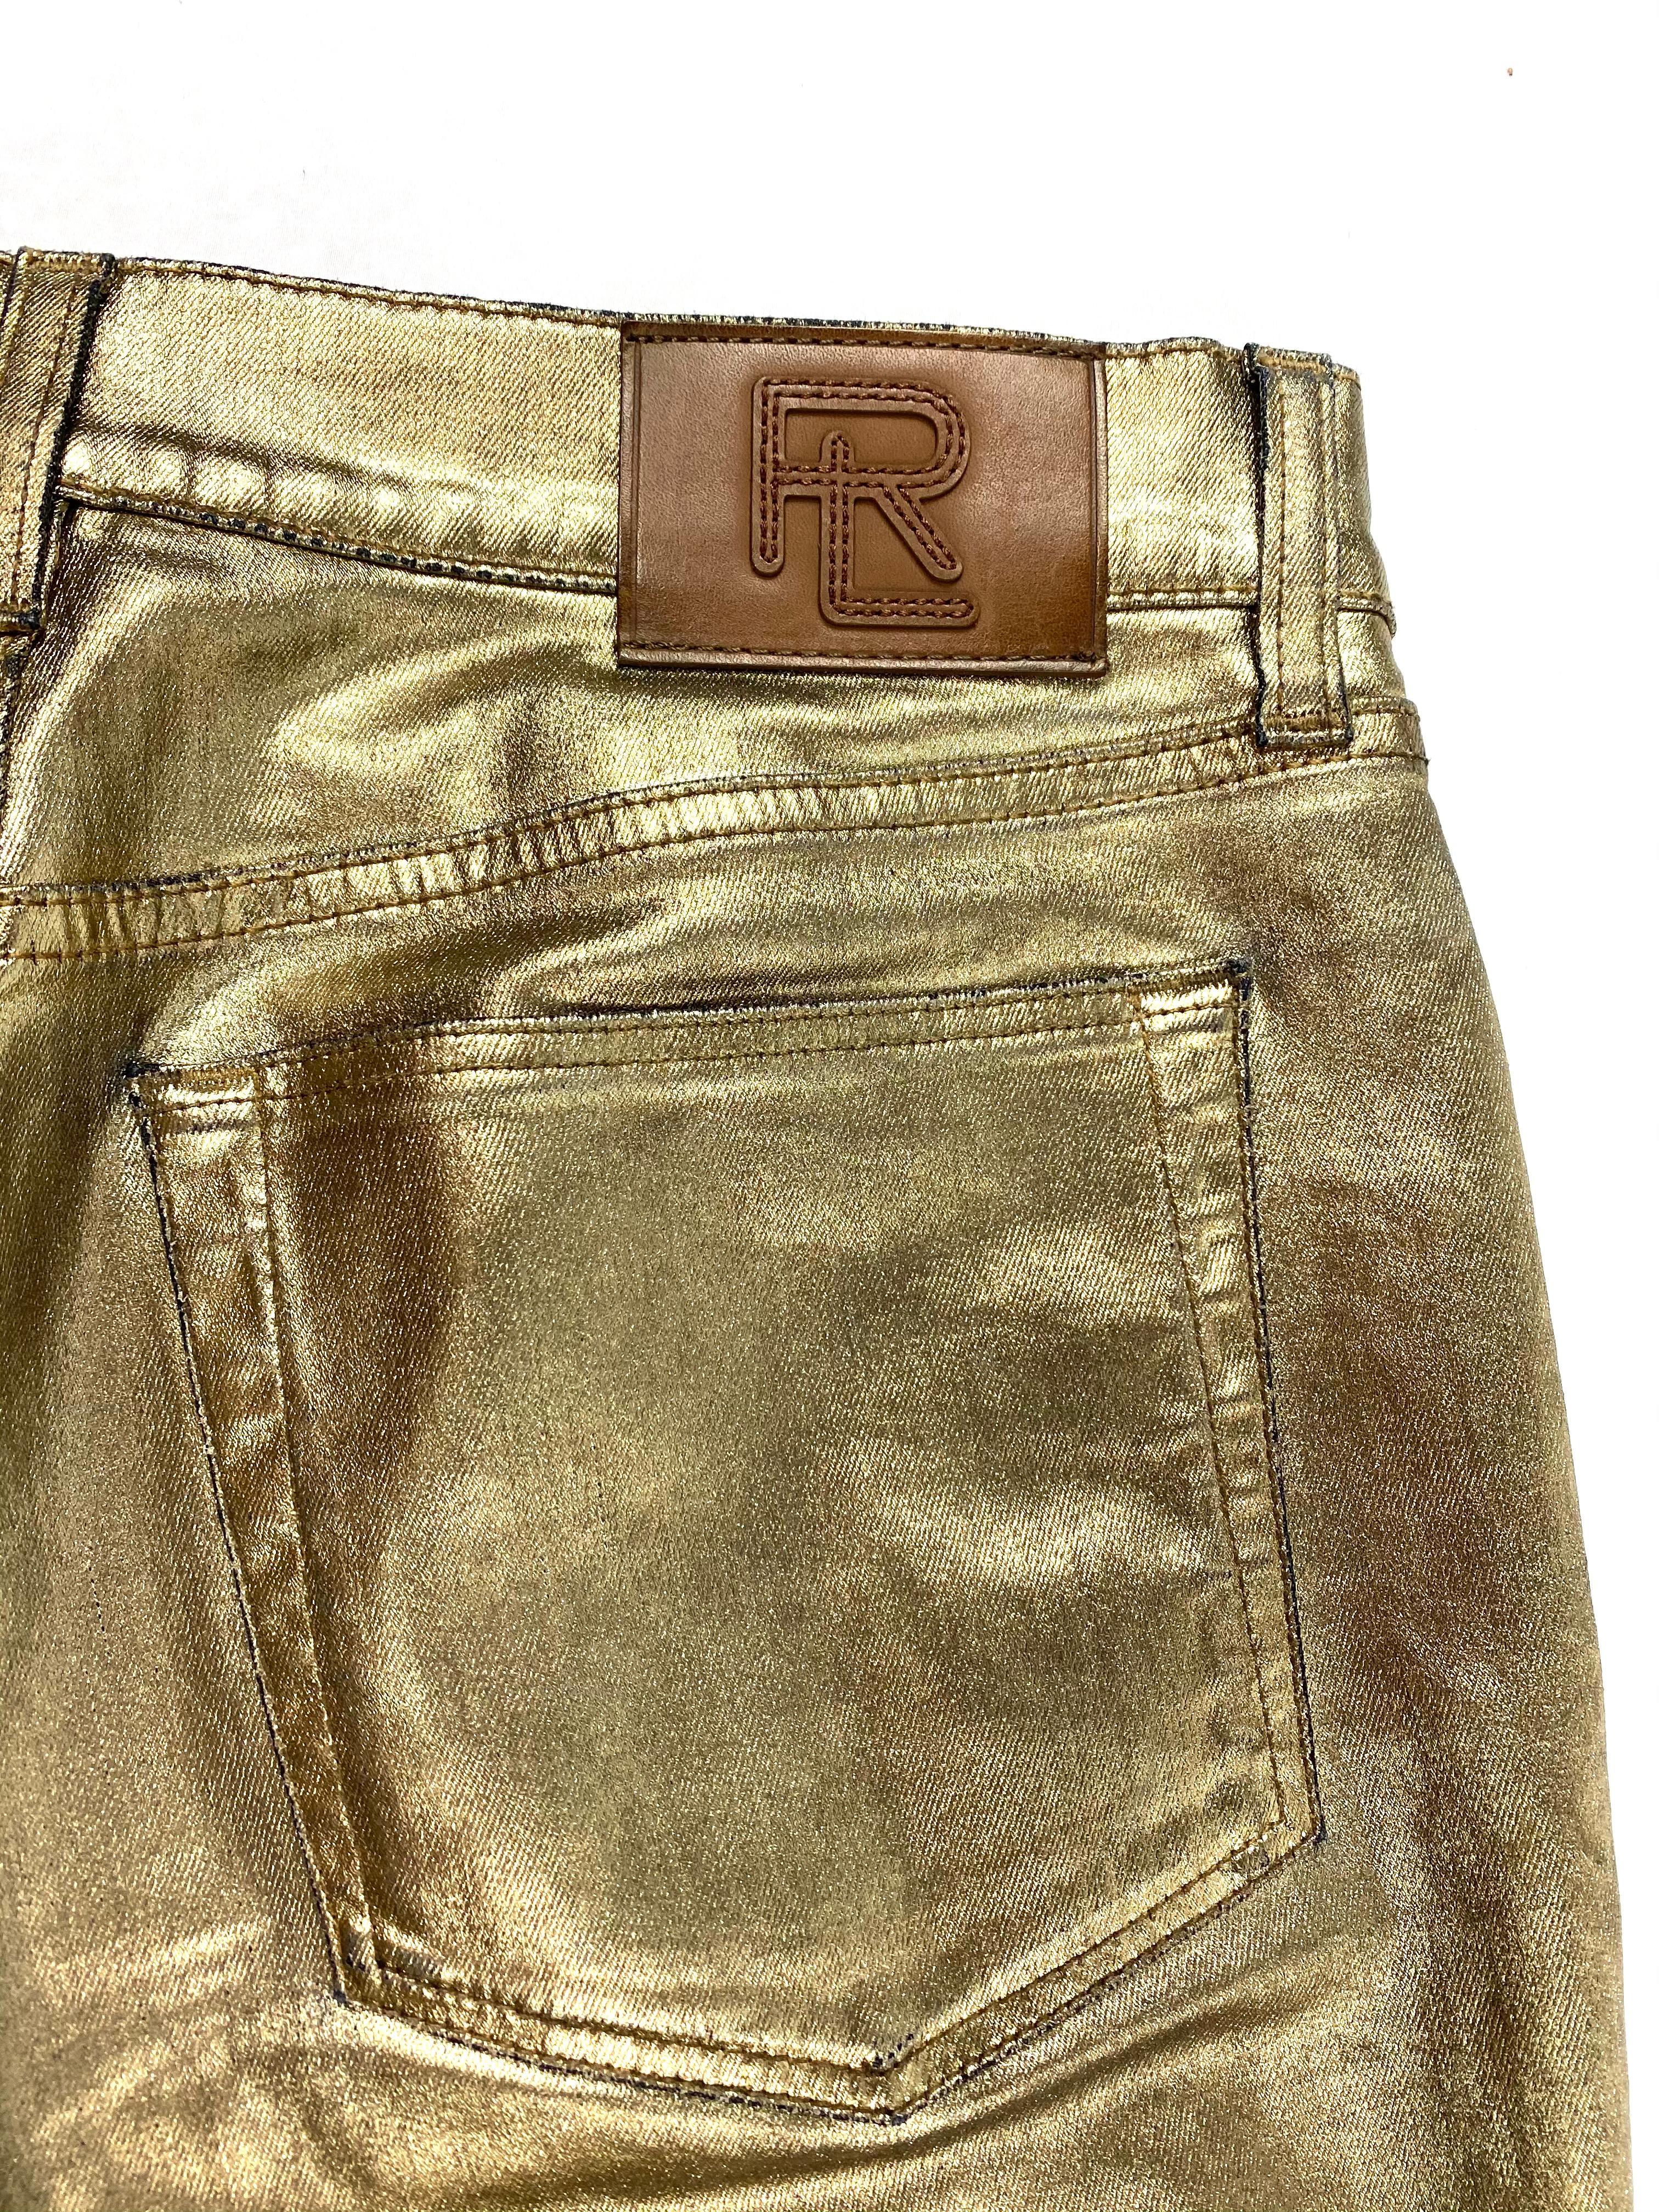 Ralph Lauren Gold Metallic Cotton Jeans Pants Size 28 For Sale 1